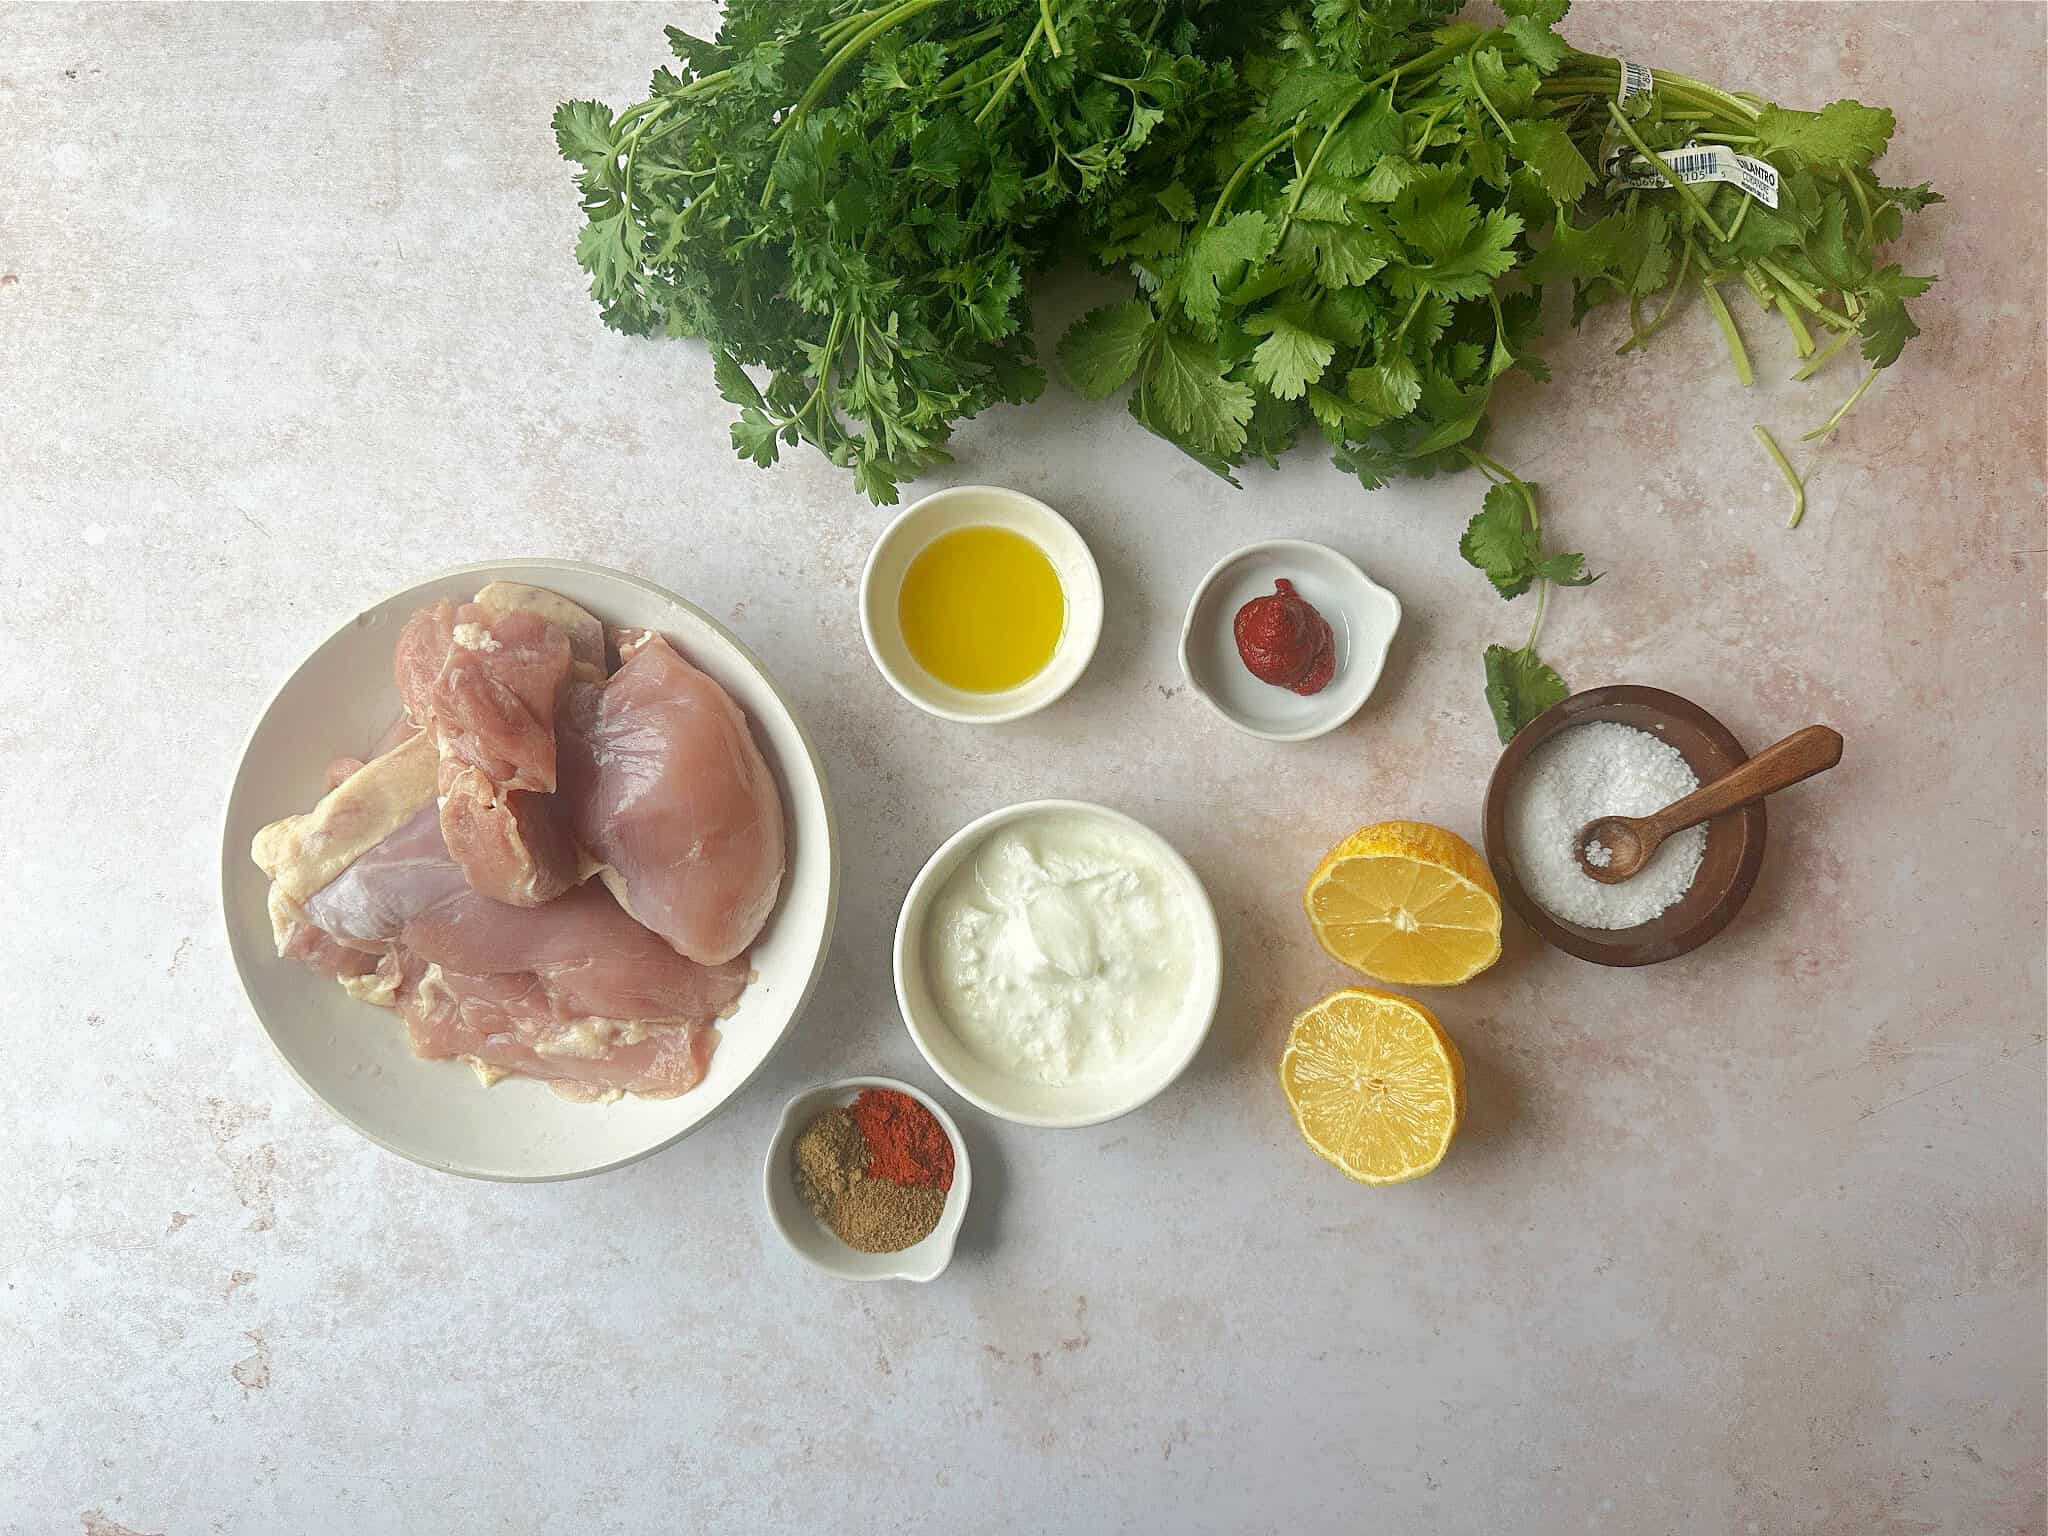  Ingredients for Mediterranean chicken skewers: chicken thighs, olive oil, yogurt, lemon juice, tomato paste, parsley, cilantro, cumin, coriander, paprika, salt, and pepper.